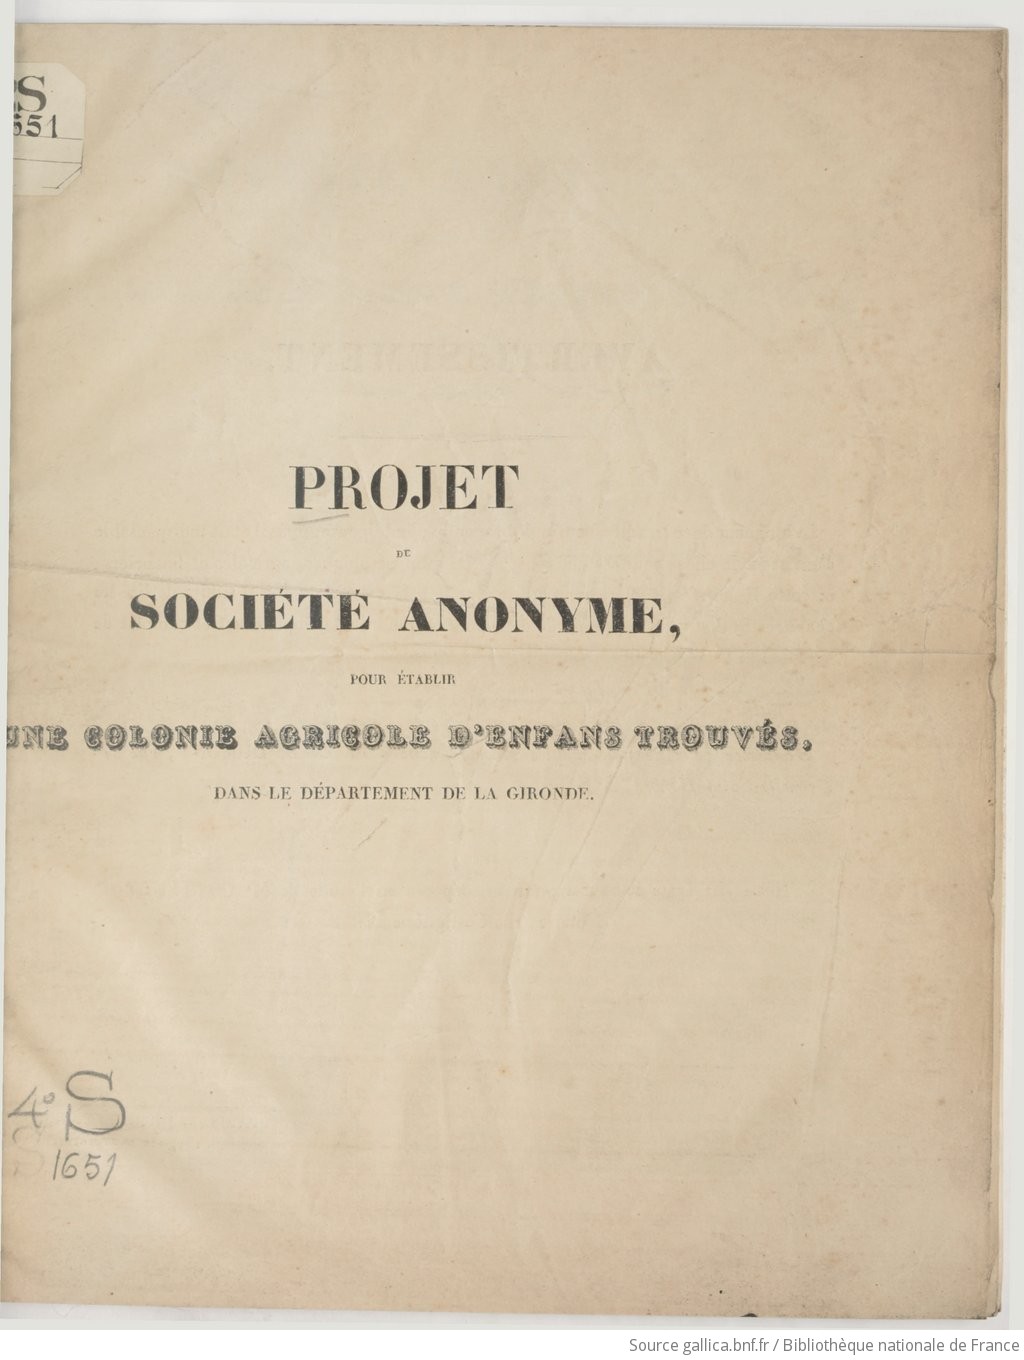 Projet de Société anonyme pour établir une colonie agricole d'enfans trouvés dans le département de la Gironde